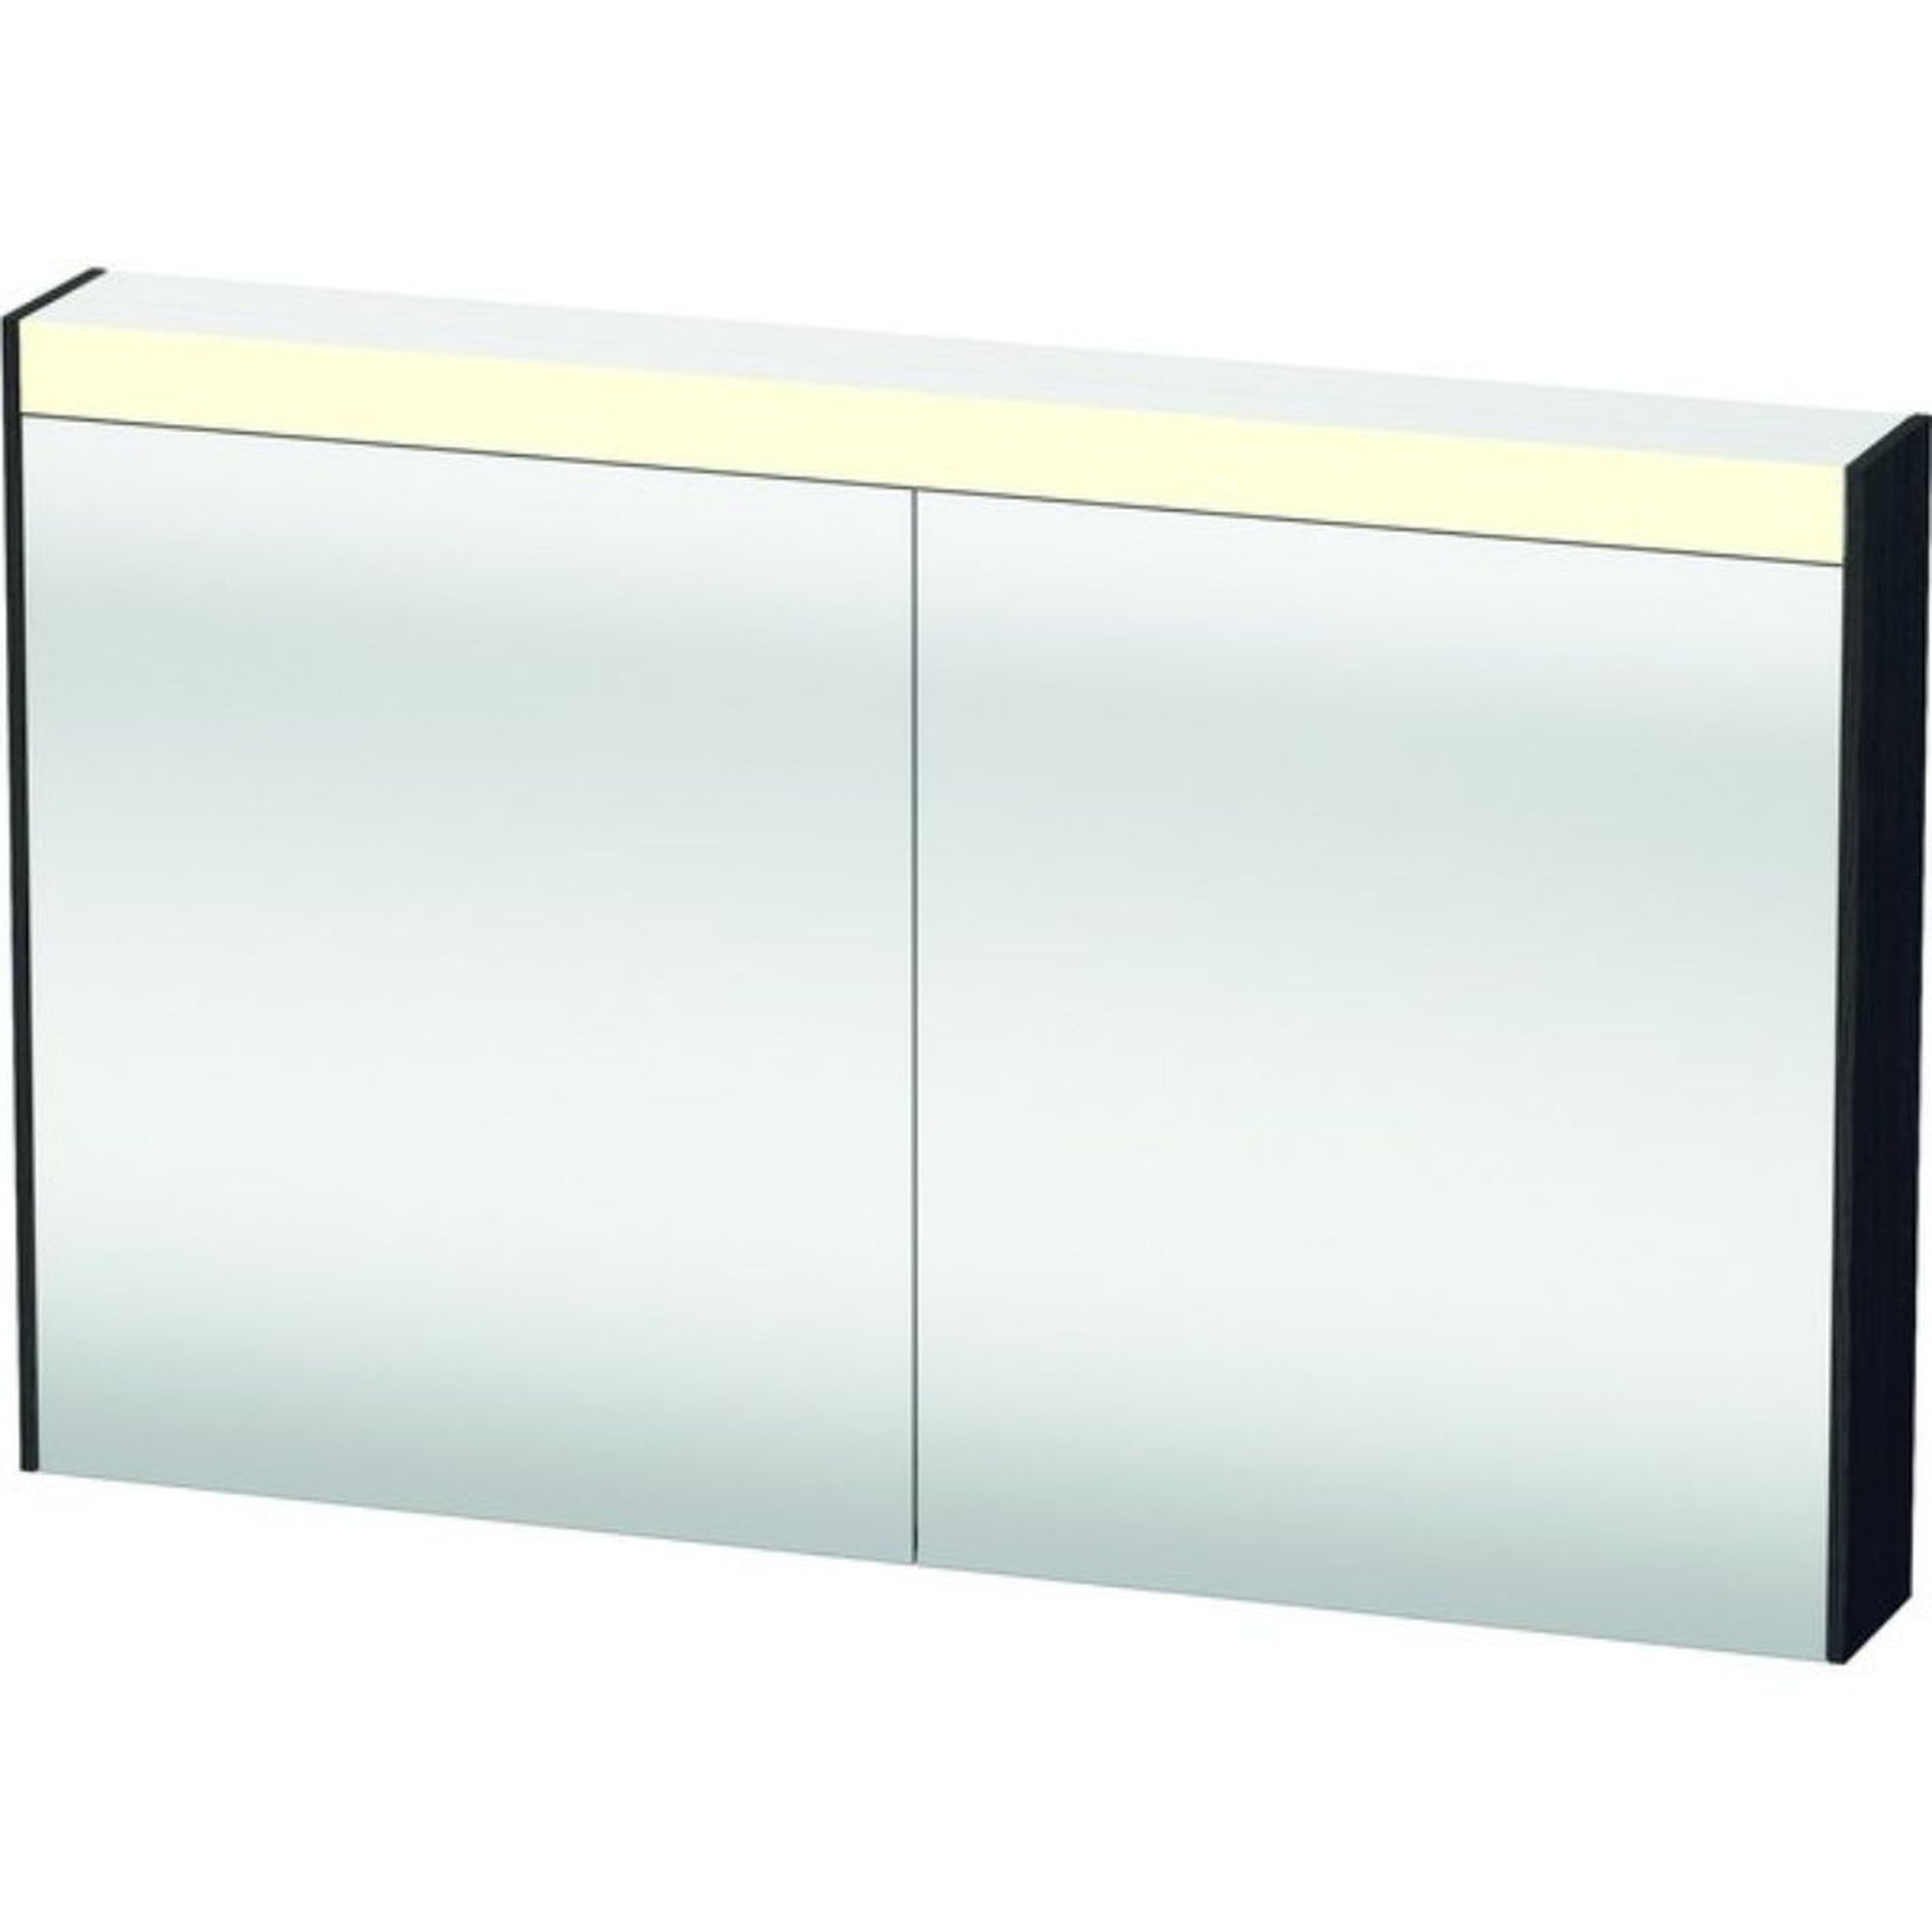 Duravit Brioso 40" x 30" x 6" Mirror Cabinet With Lighting Black Oak